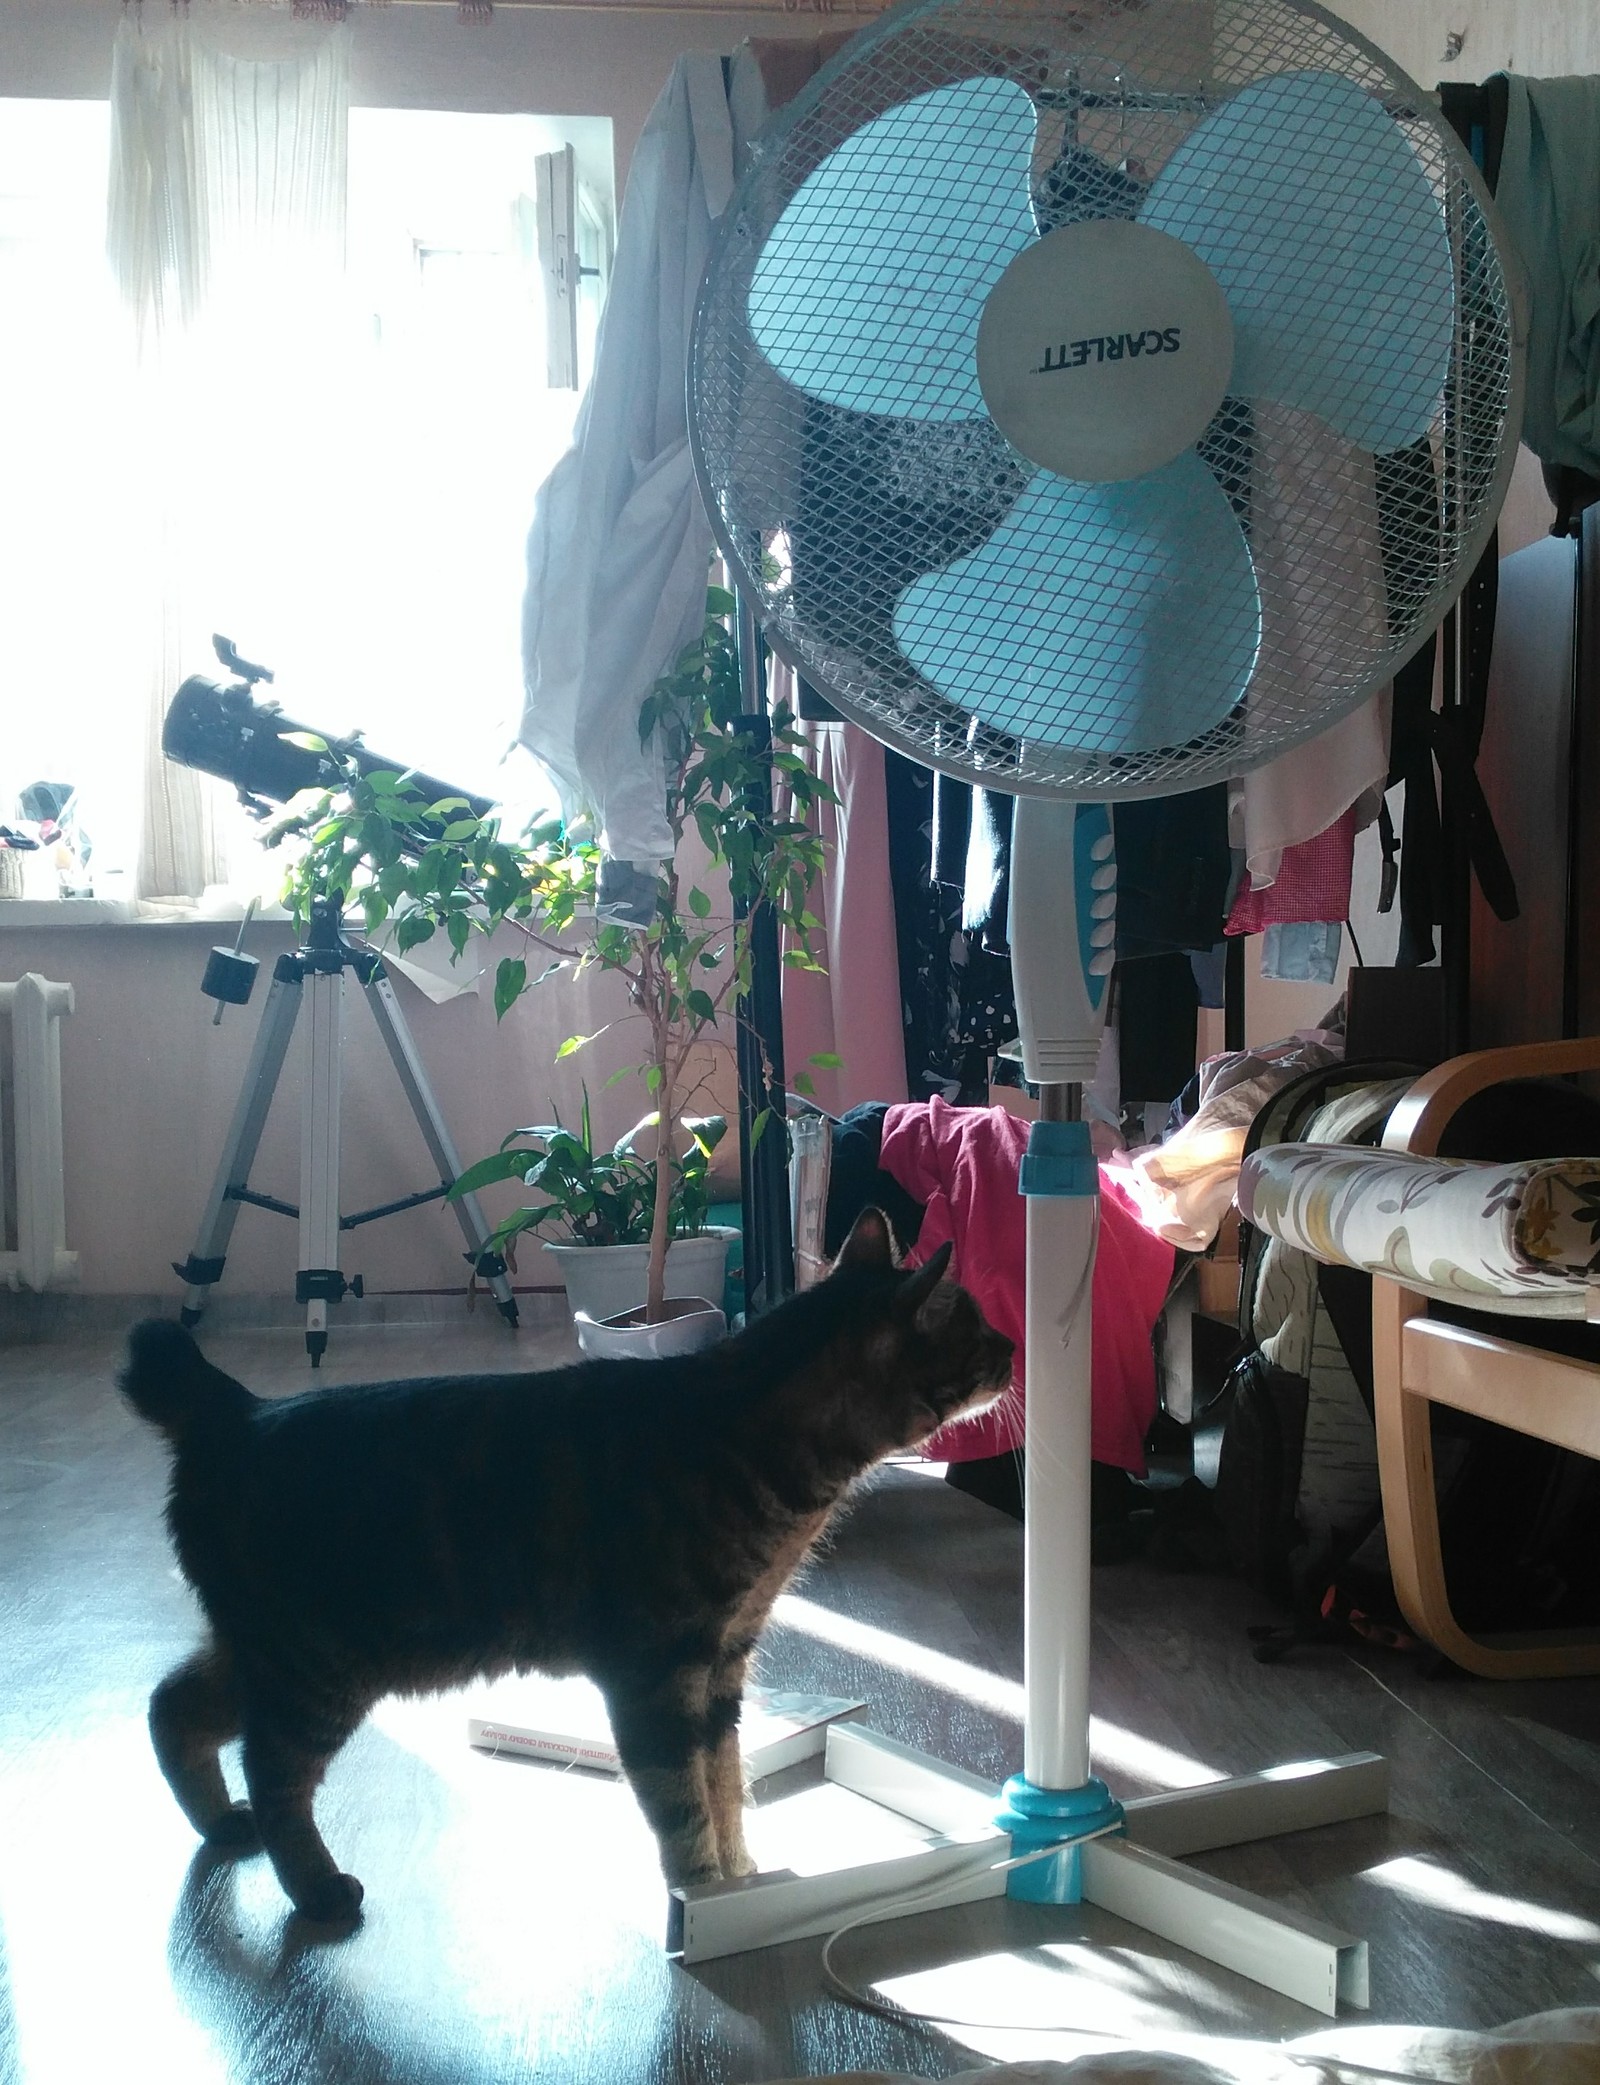 Близкое знакомство моего кота с электричеством | Пикабу